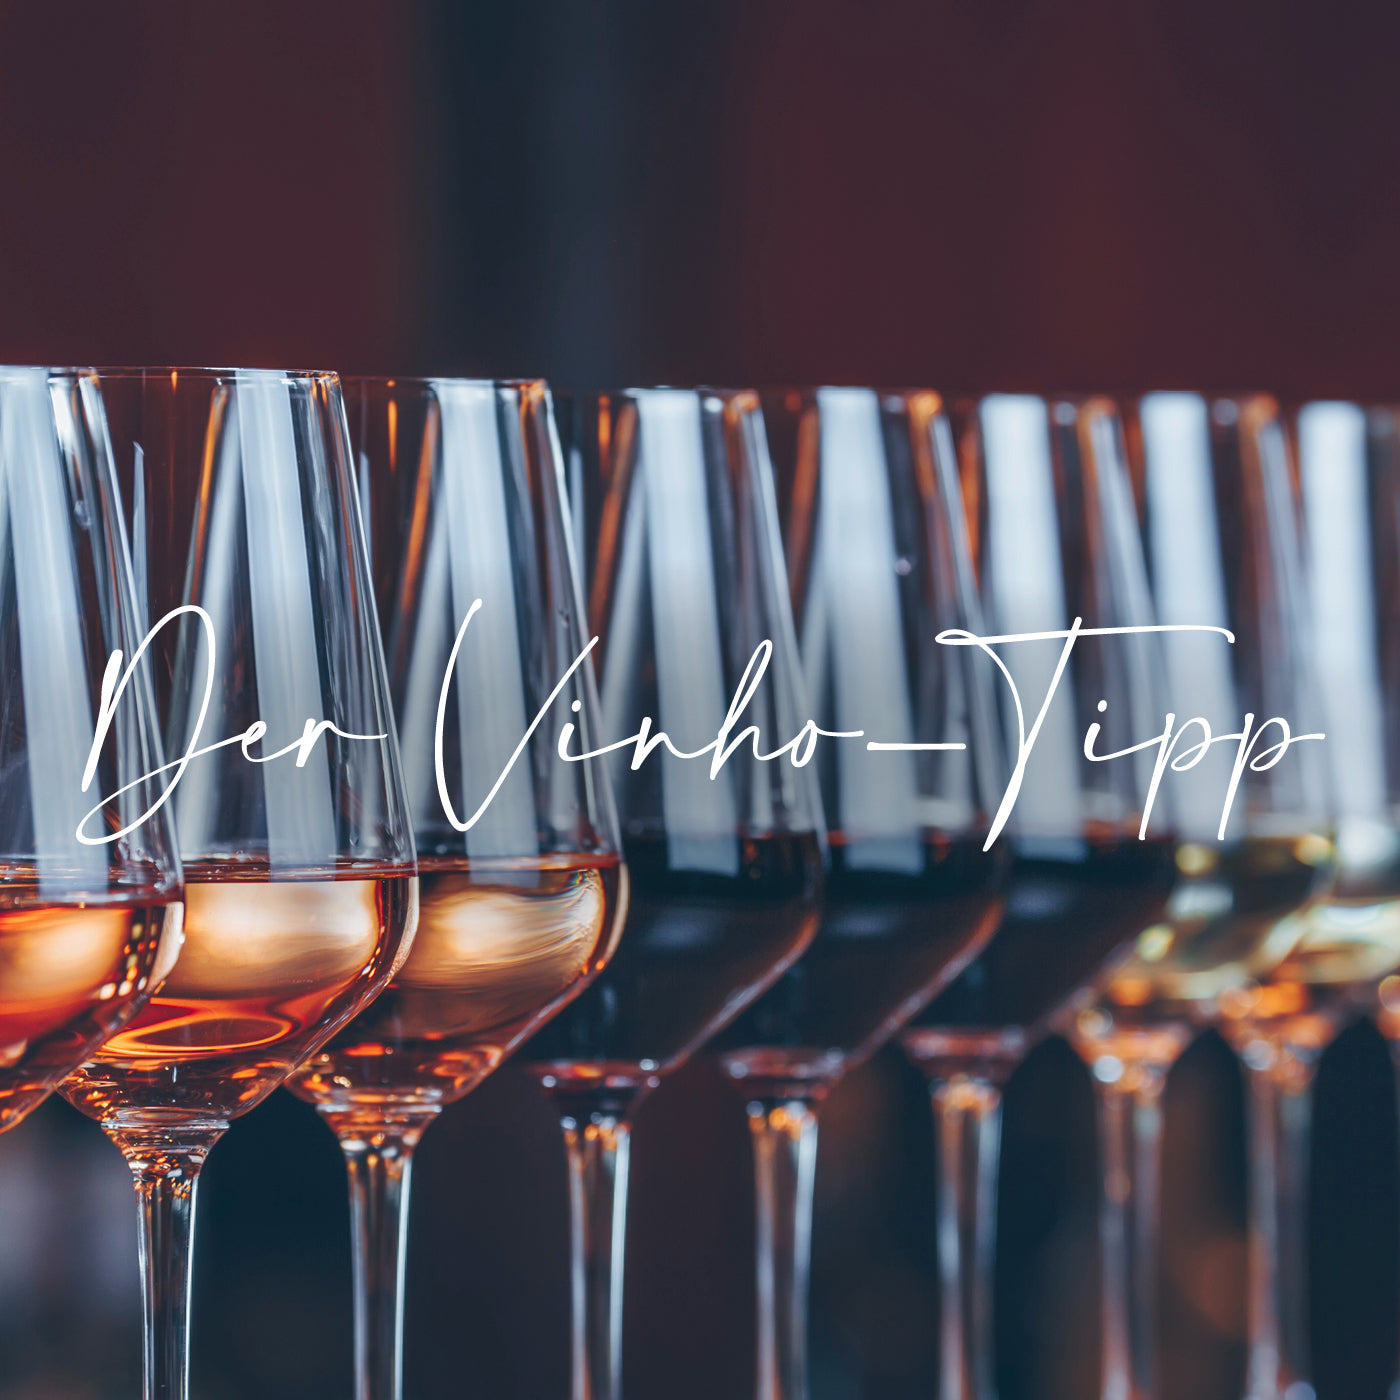 Vinho-Tipp: aktuelle Angebote und Weinsets der Vinho Bar aus Wuppertal. Bild mit mehren gefüllten Weingläsern, die von Händen gehalten werden.